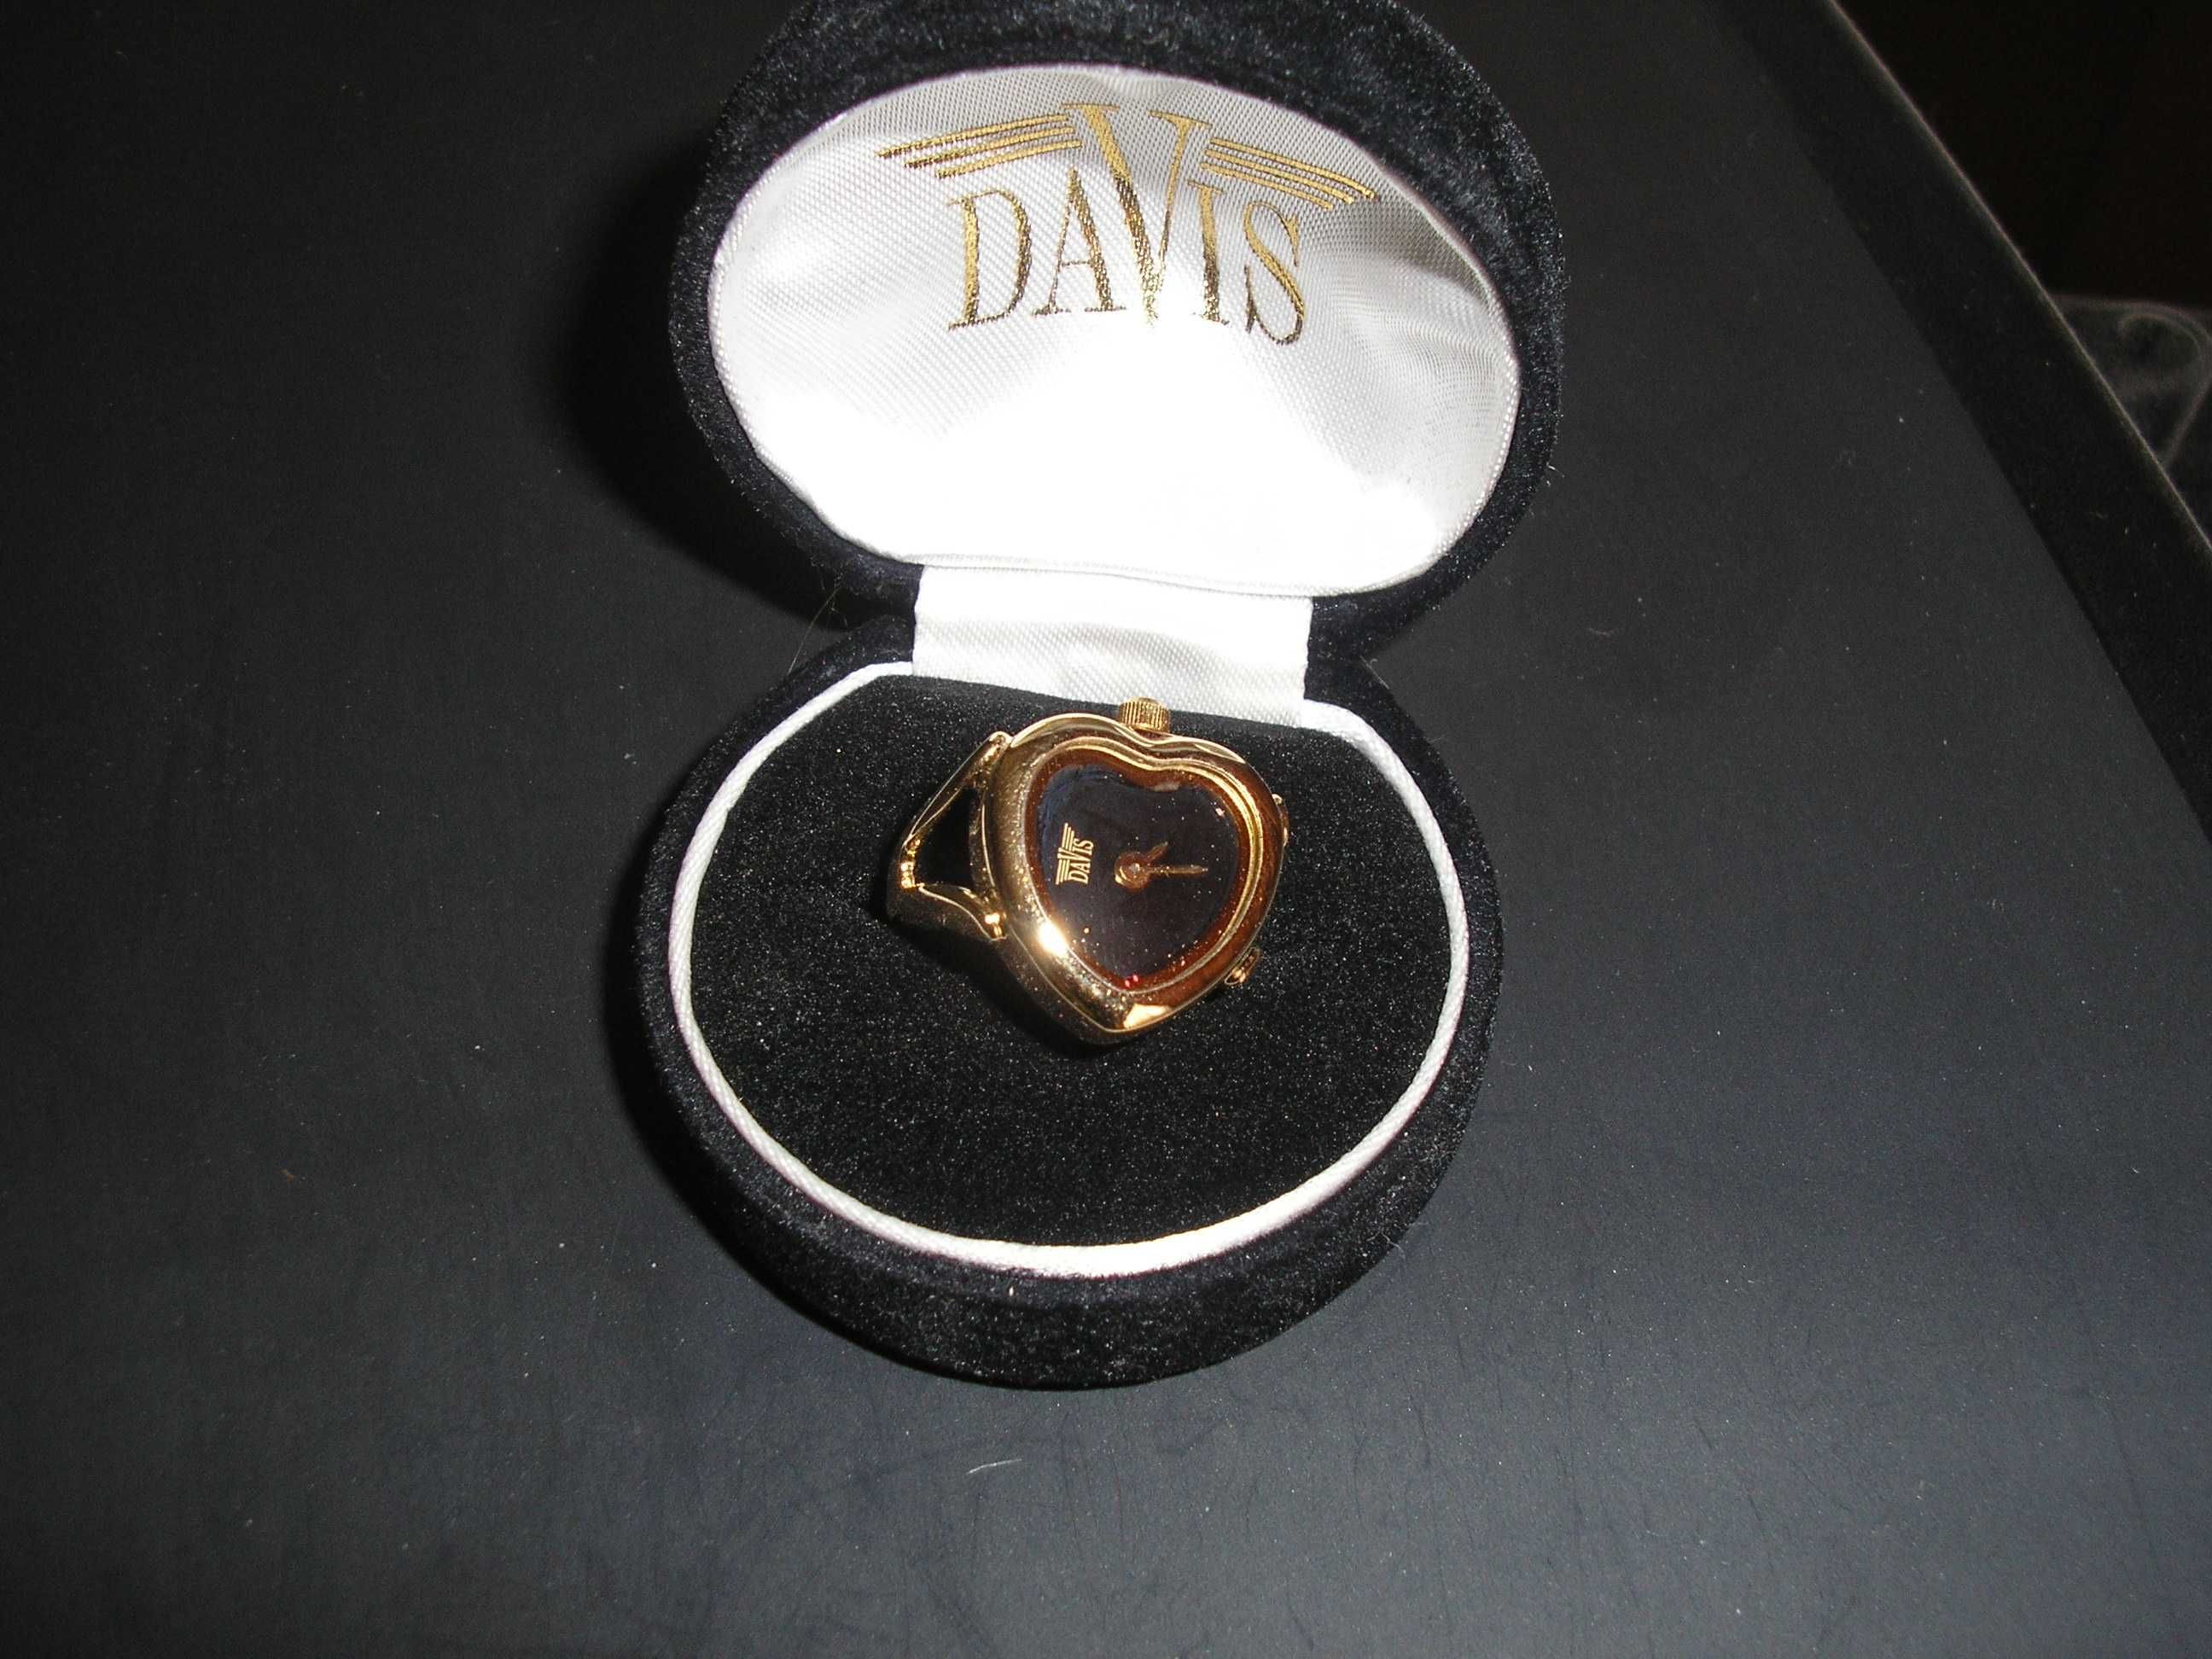 Элегантное кольцо-часы "DAVIS" Limited Edition « Élégants » Original ®